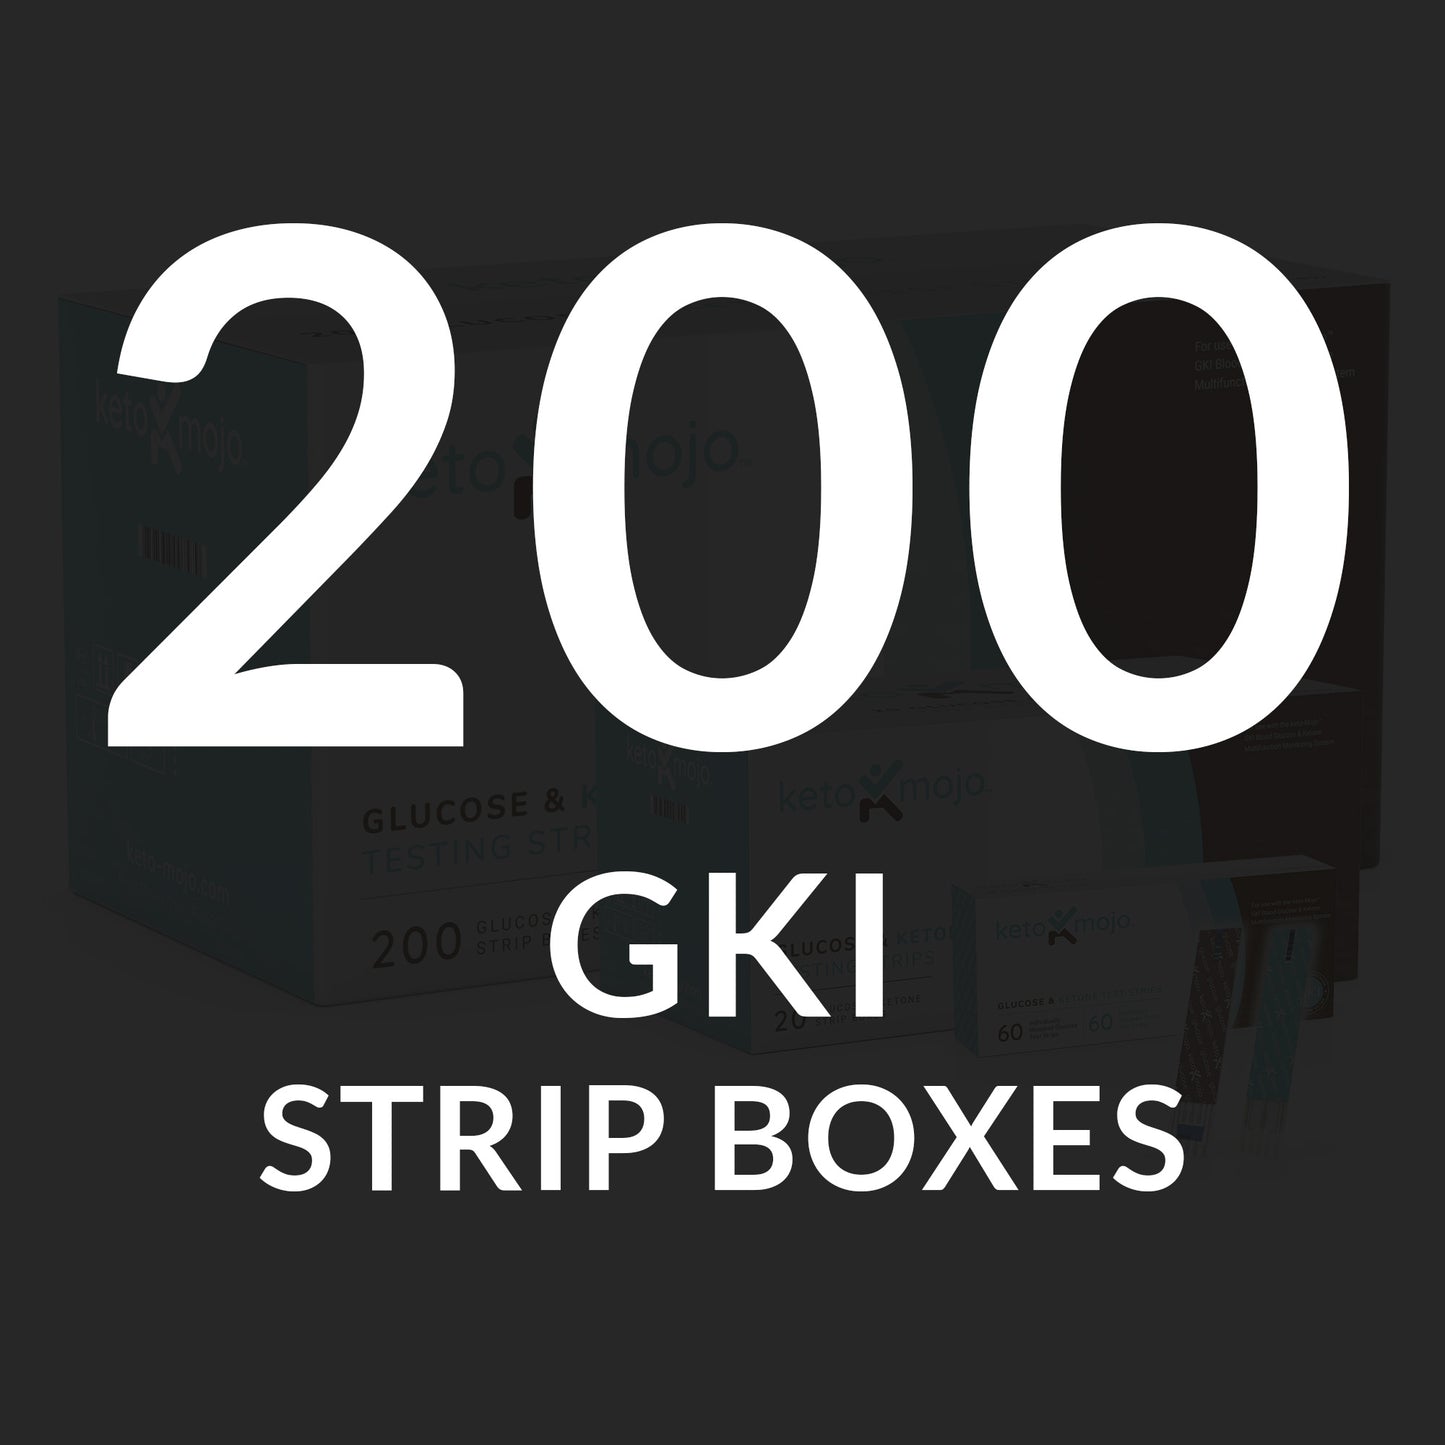 Mastercase GKI Glucose & Ketone Test Strips - THE COMBO PACK (200 units)